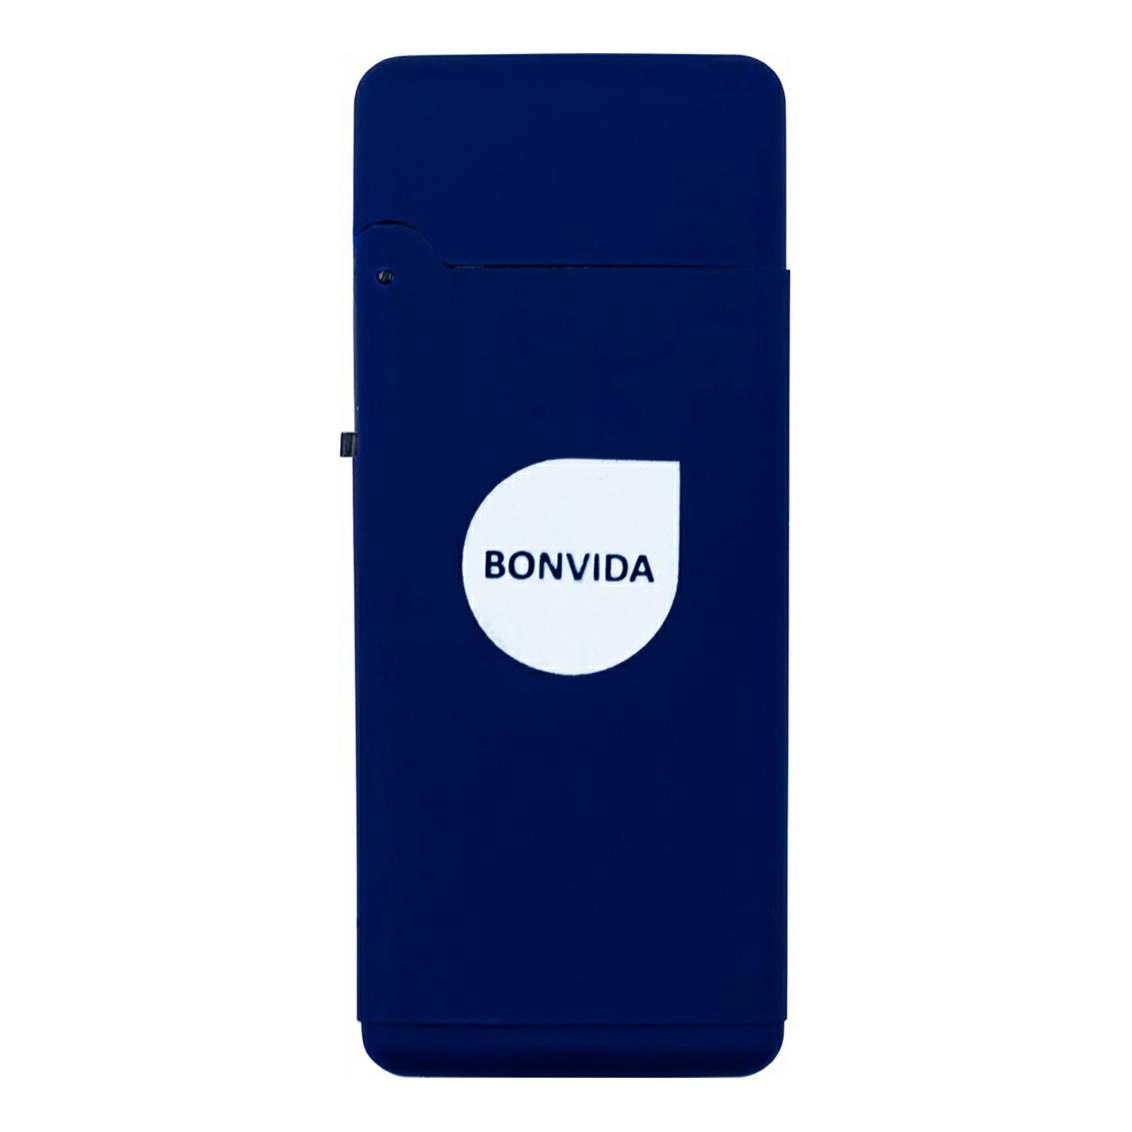  Bonvida Турбо газовая заправляемая с крышкой - характеристики .